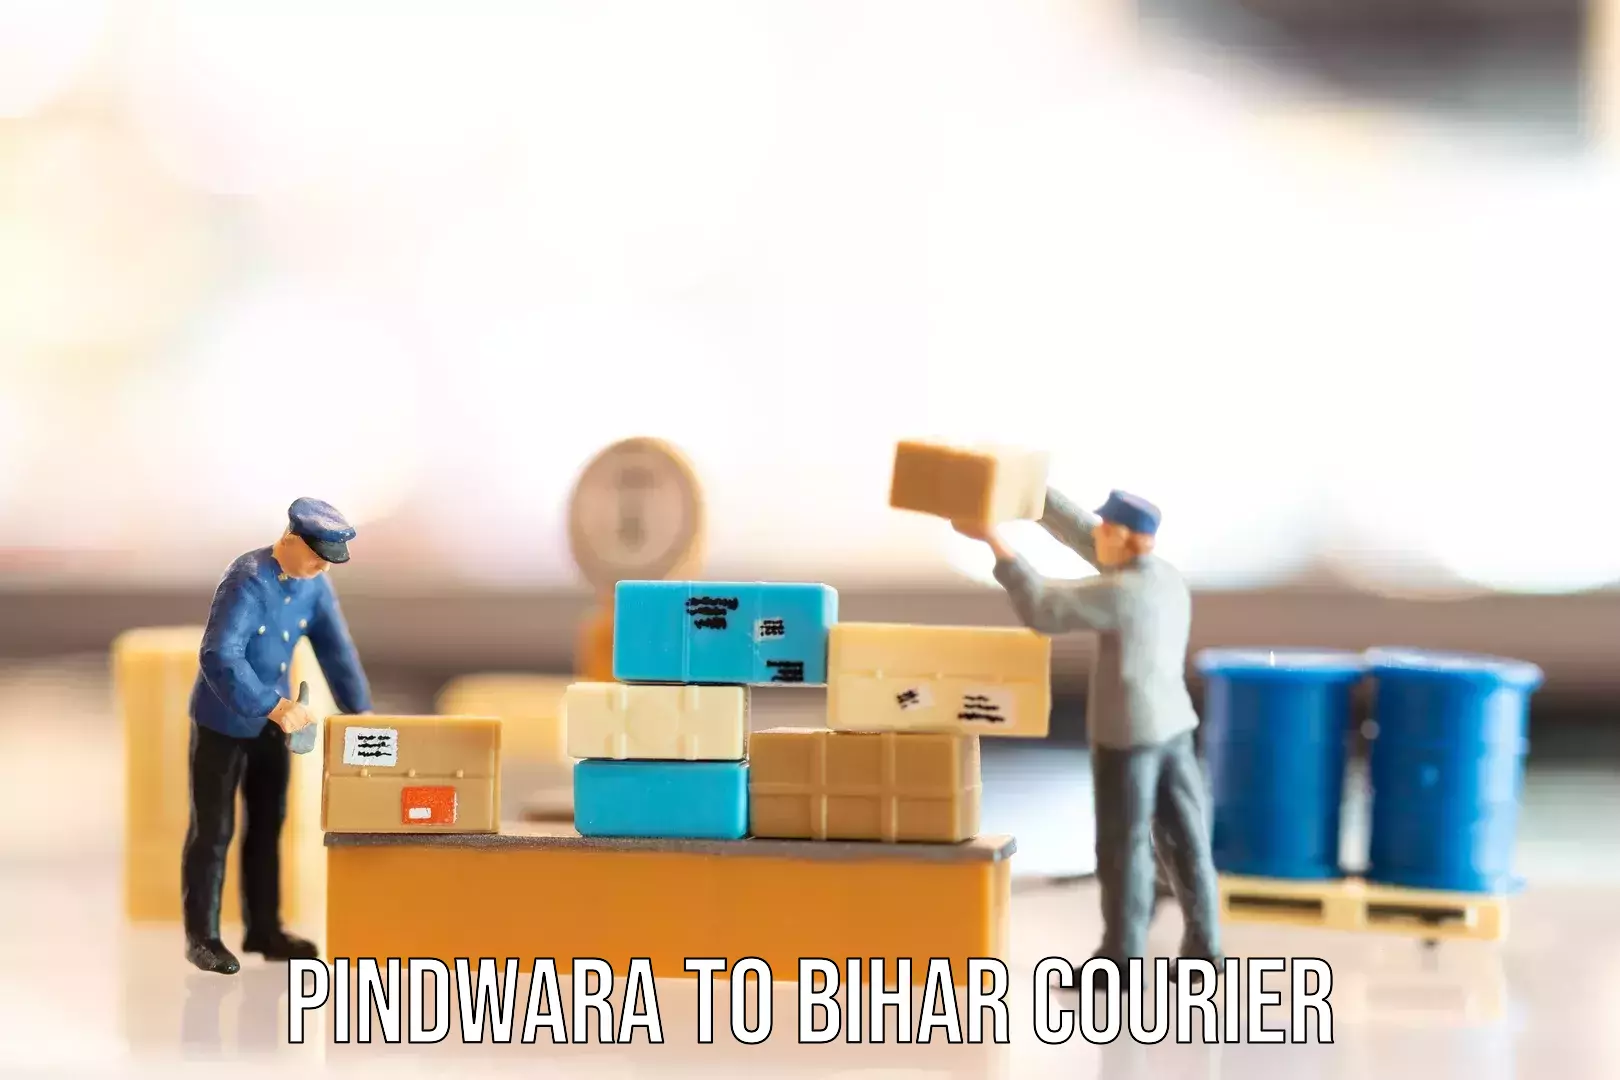 Baggage shipping service Pindwara to Aurangabad Bihar